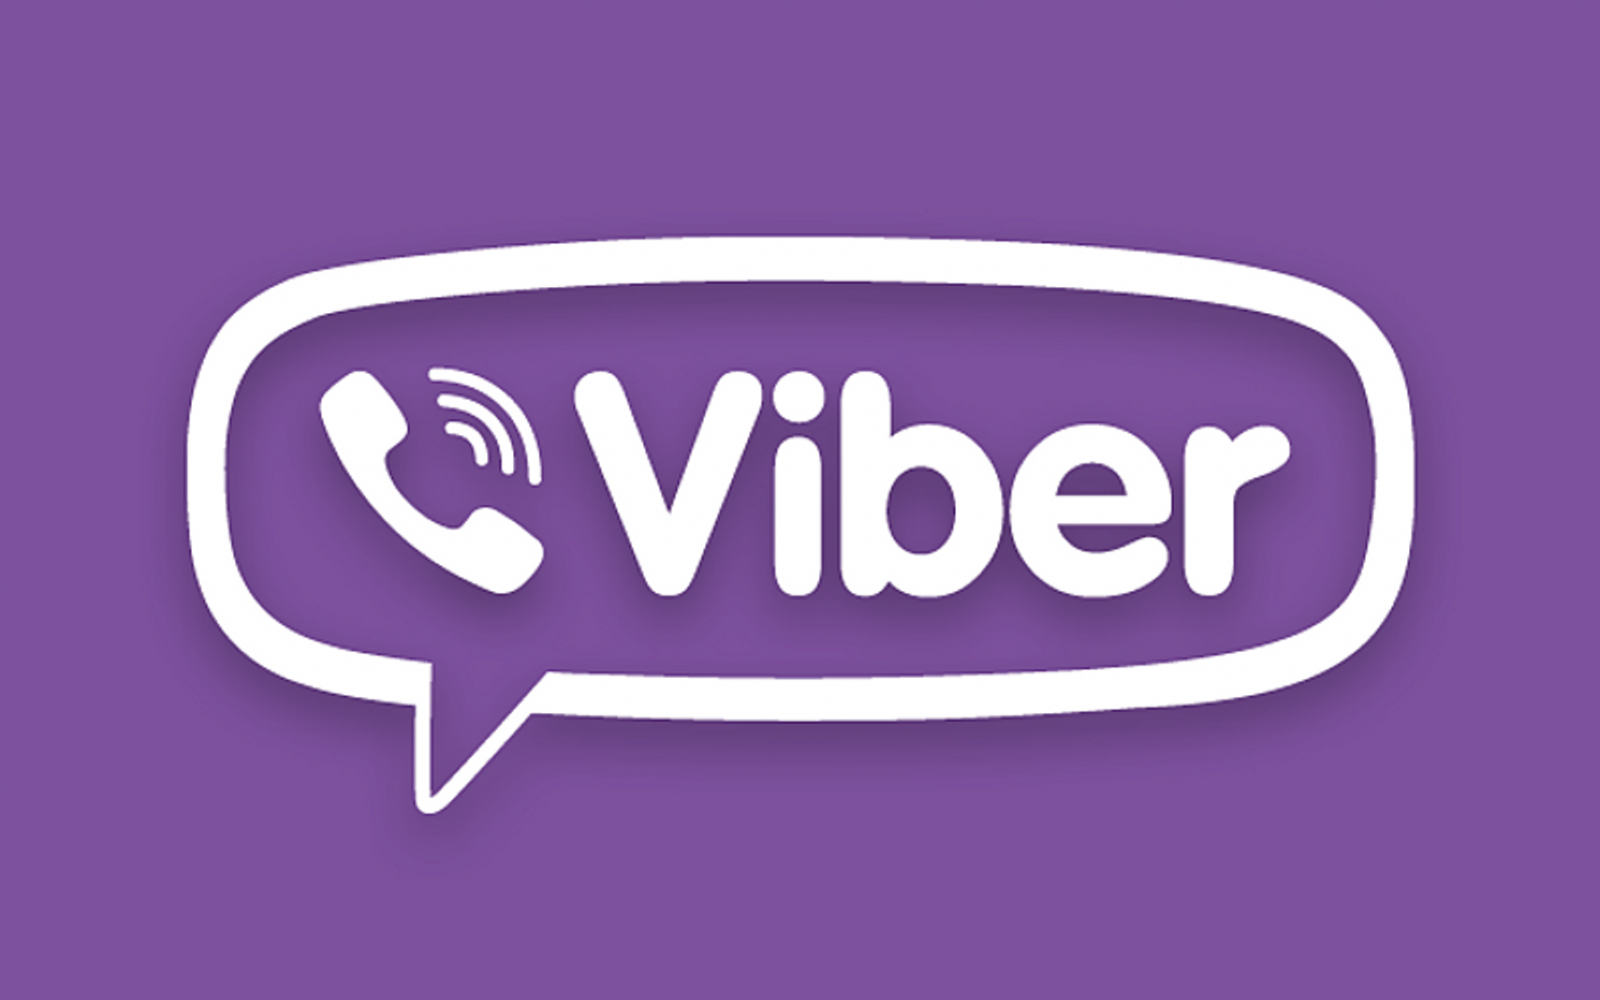 Viber 标志